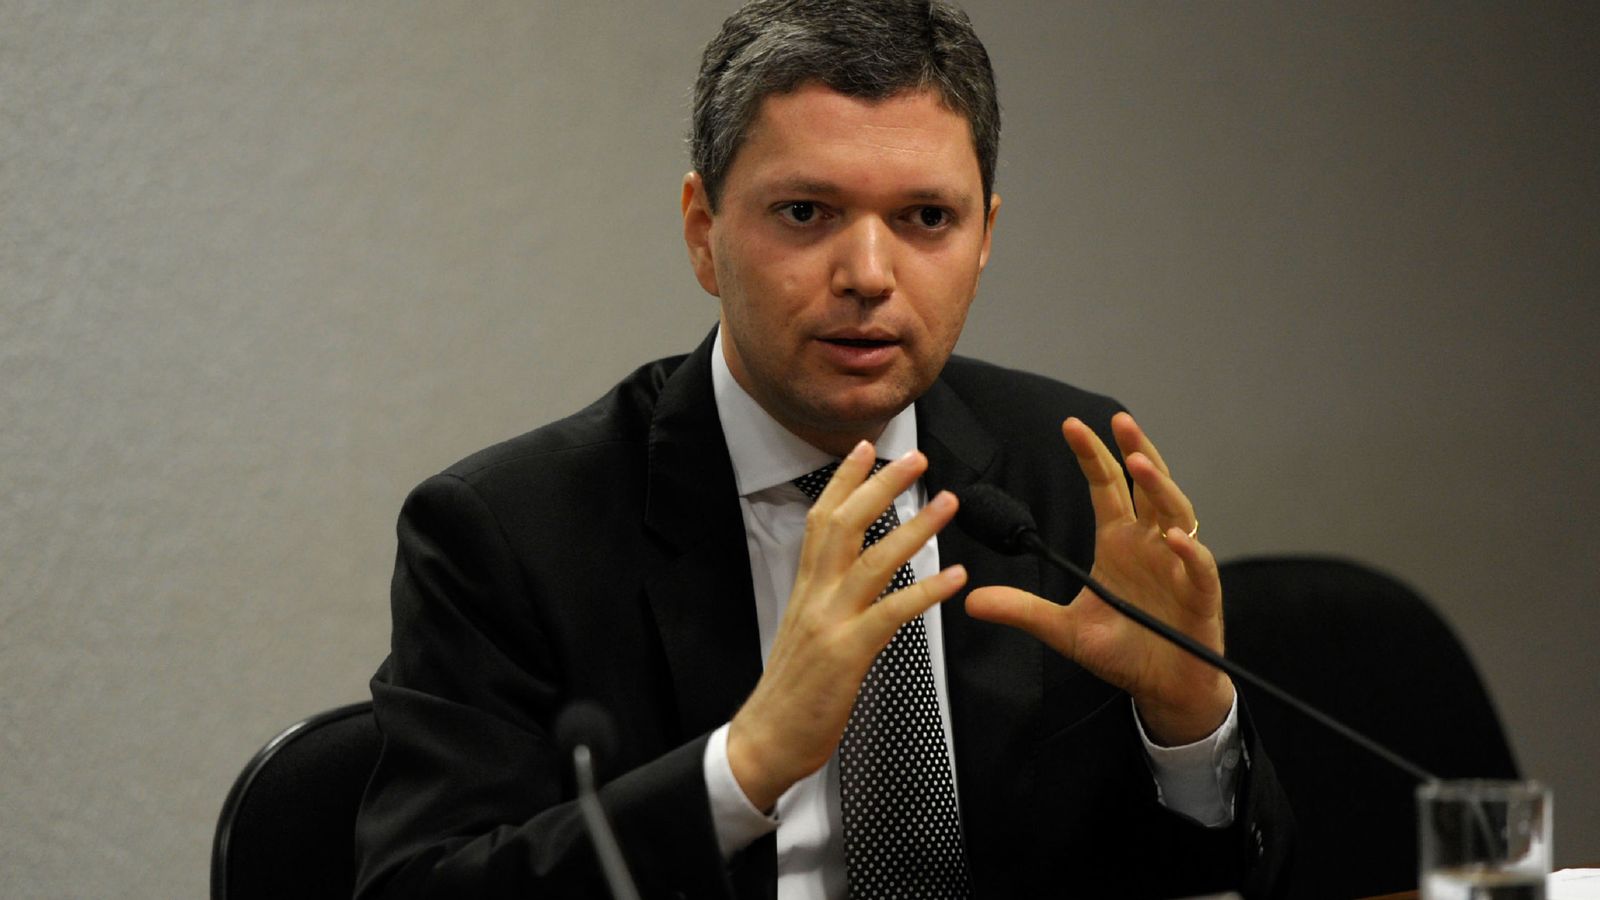 Foto: Fotografía cedida del ministro de Transparencia de Brasil, Fabiano Silveira. (Efe) 